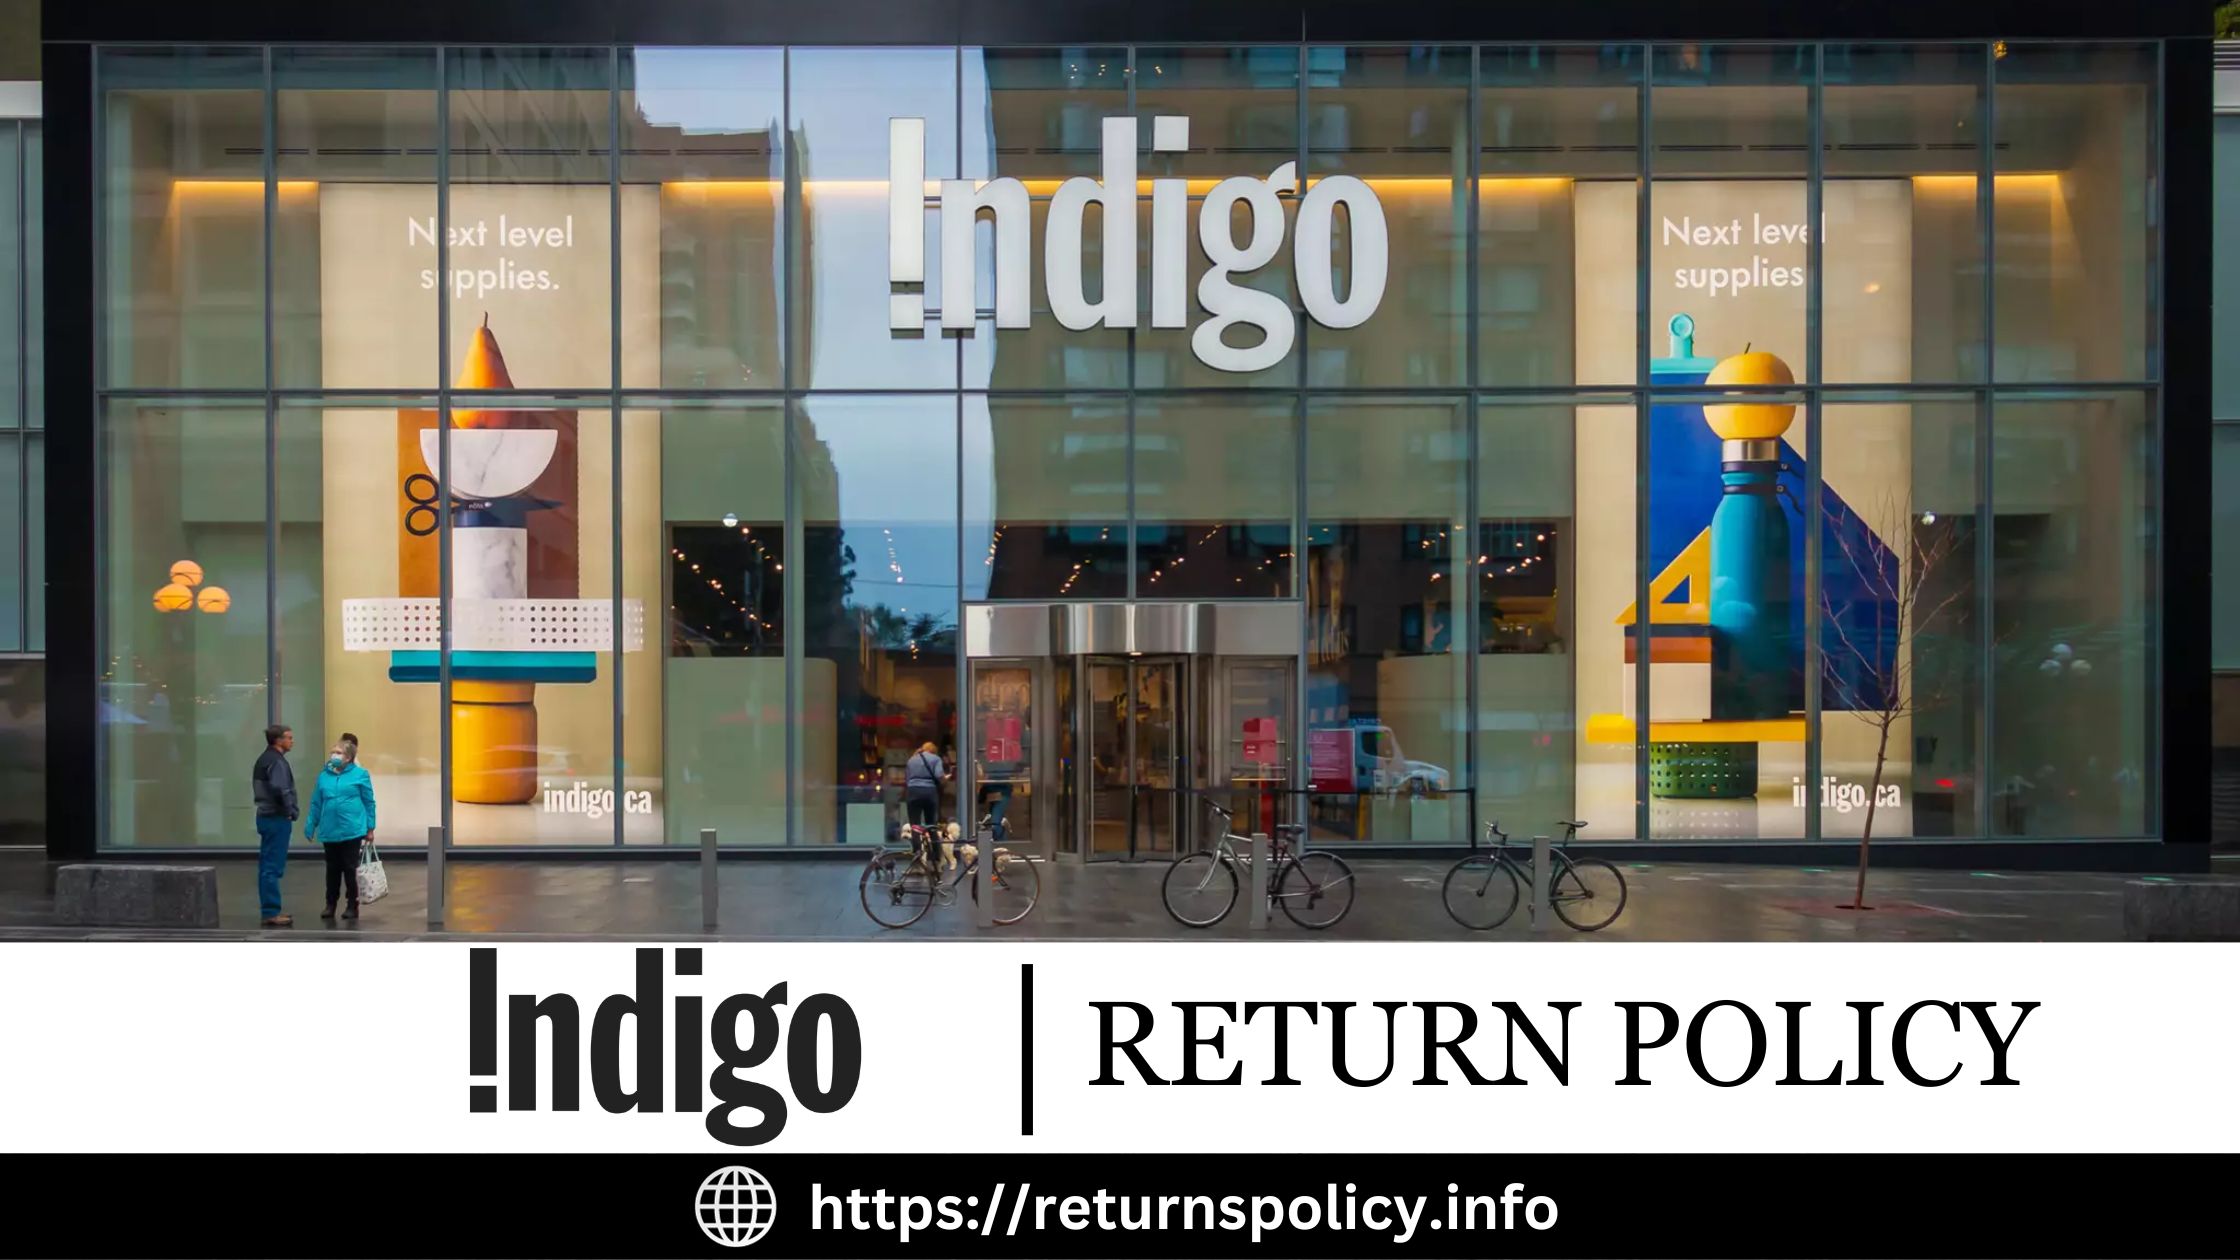 Indigo Return Policy